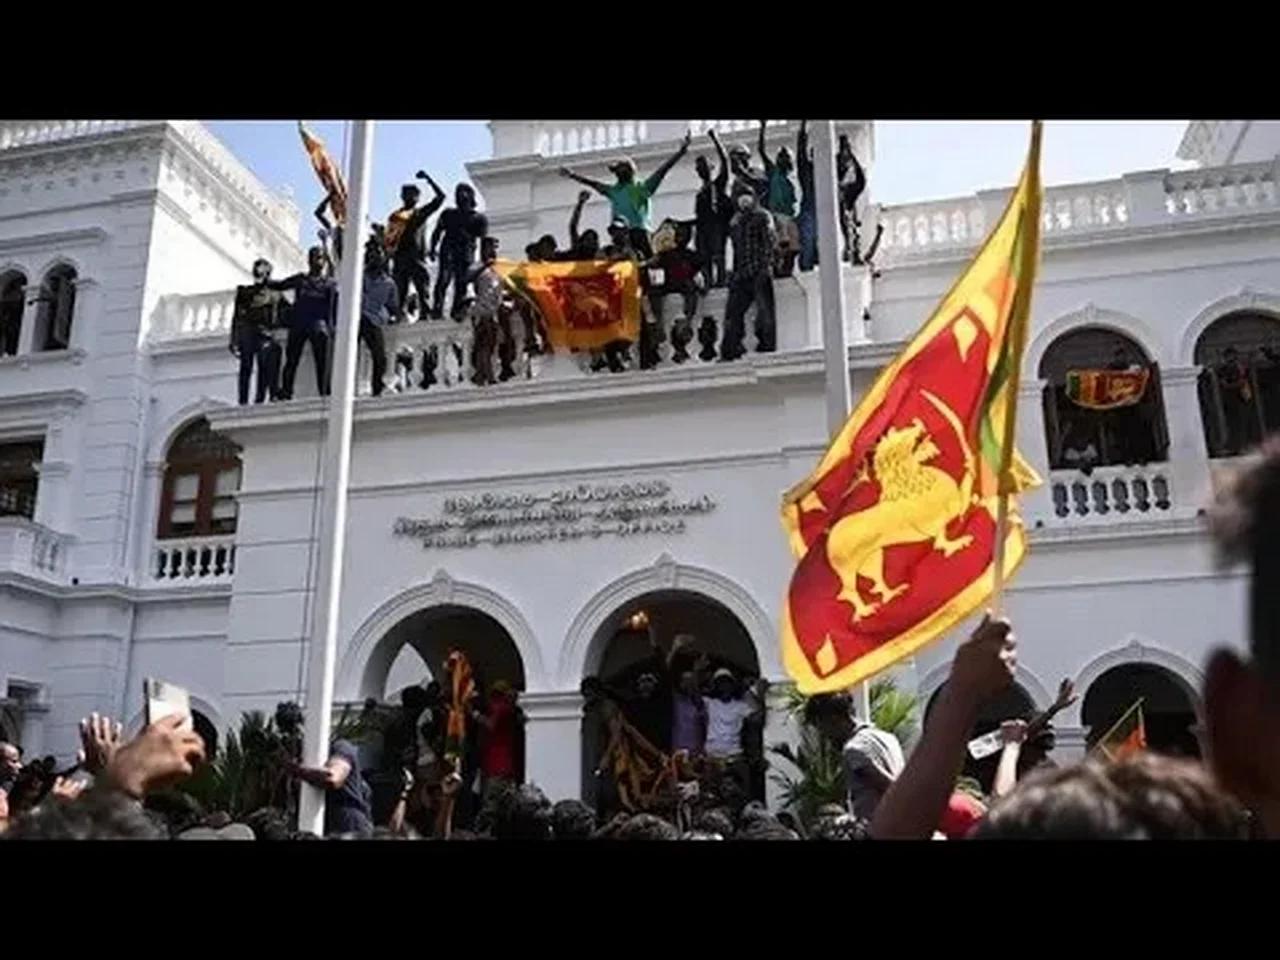 Sri lanka Révolution deuxieme semaine